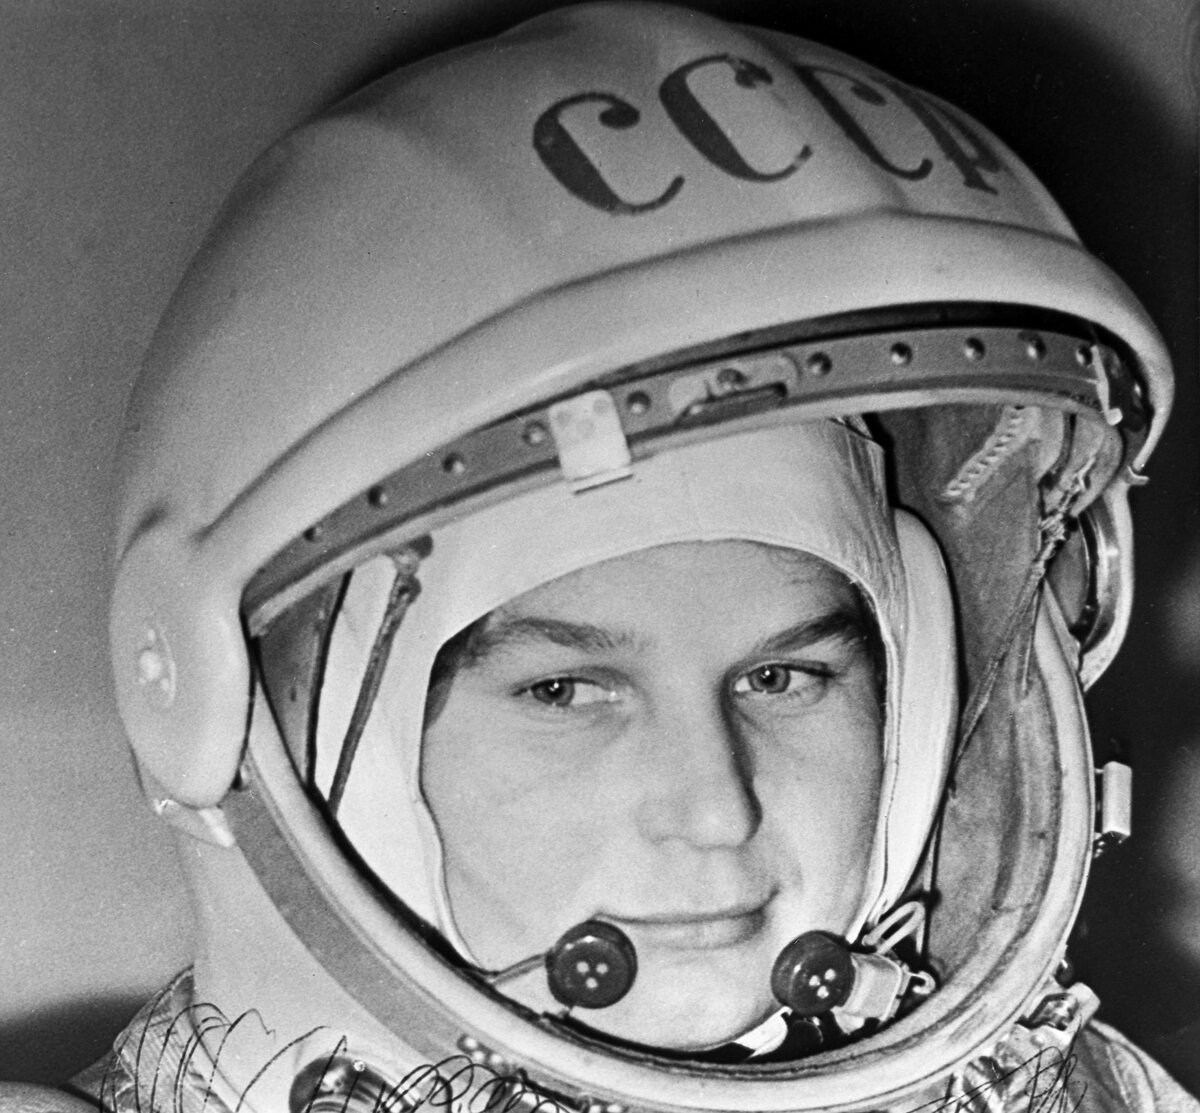 Первый советский космонавт полетевший в космос. Терешкова космонавт.